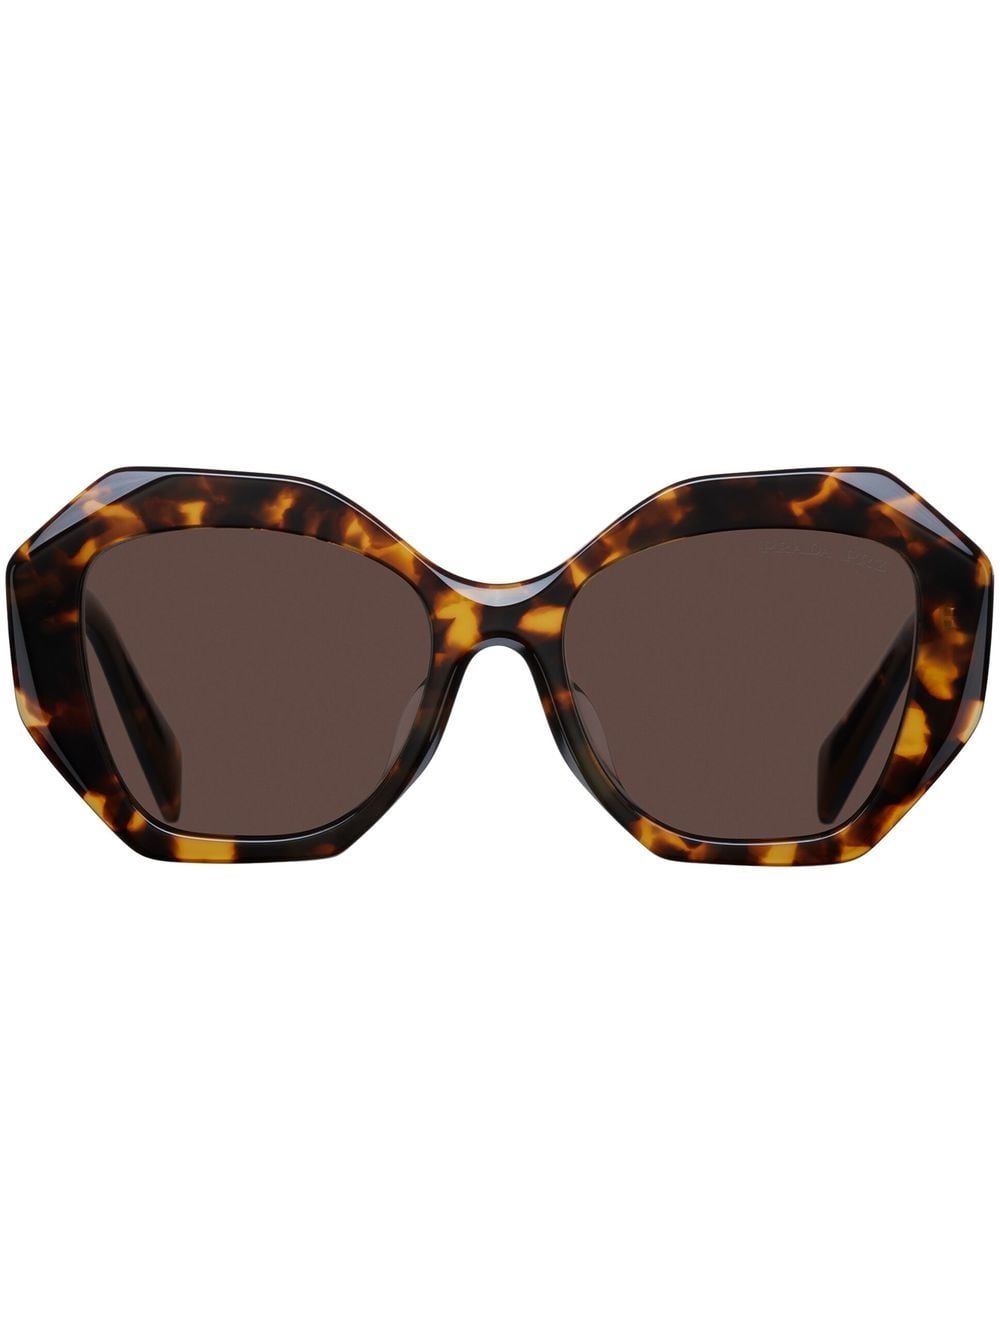 Image 1 of Prada Eyewear oversized-frame sunglasses